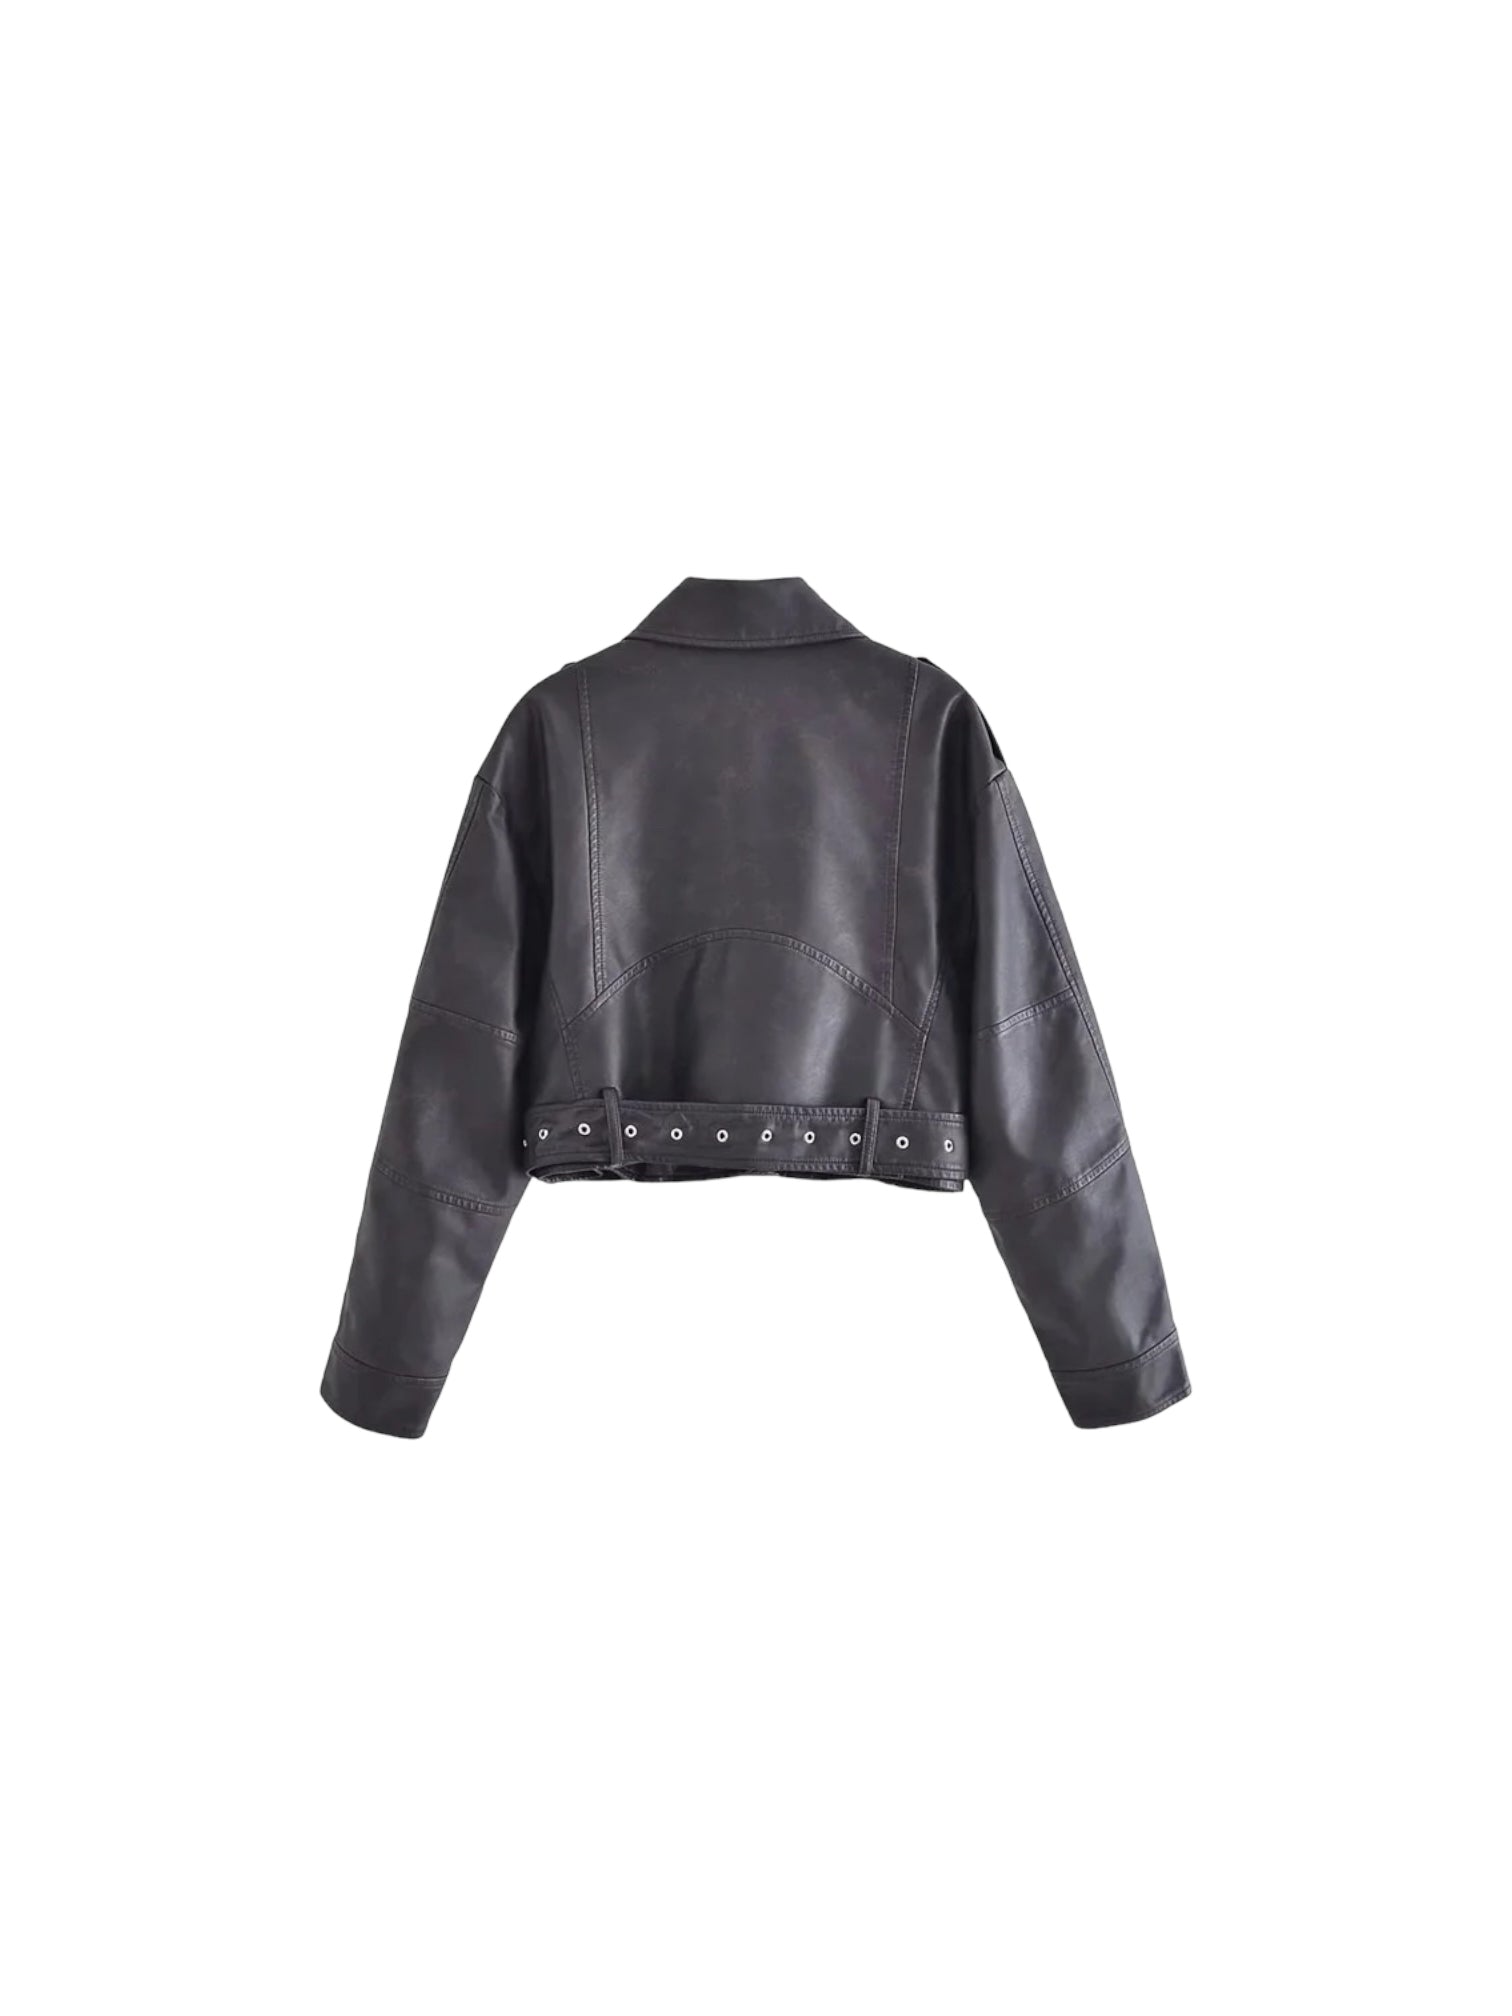 Retro Babe Faux Leather Jacket - Coats &amp; Jackets spo-cs-disabled, spo-default, spo-disabled, spo-notify-me-disabled